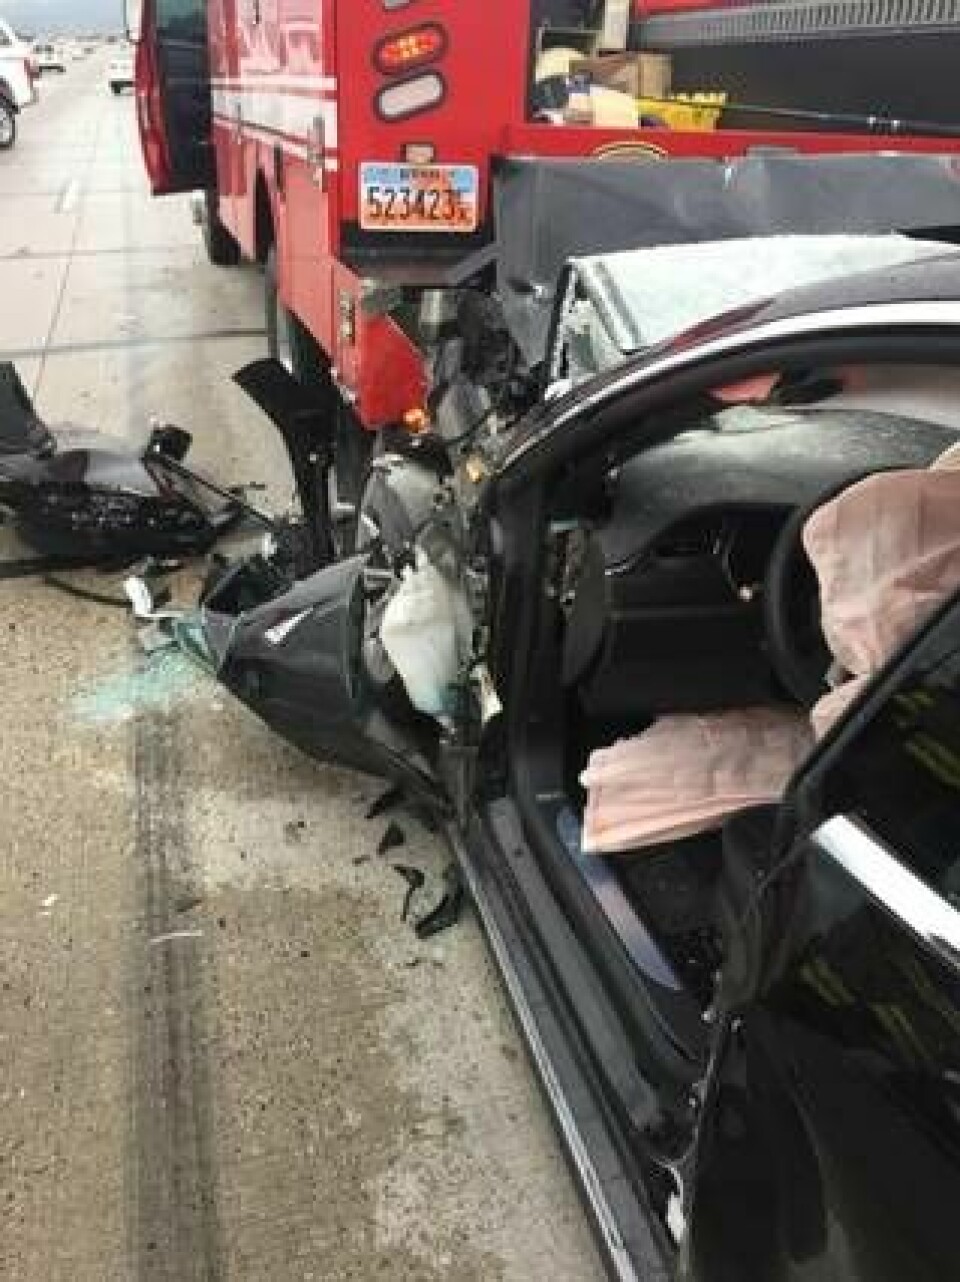 Fredagen den 11 maj 2018 inträffade en krasch mellan en Tesla Model S och en mekanikbil från brandkåren i South Jordan, Utah. Enligt vittnen ska Teslan inte ha bromsat innan krocken. Foto: South Jordan Police Department via AP